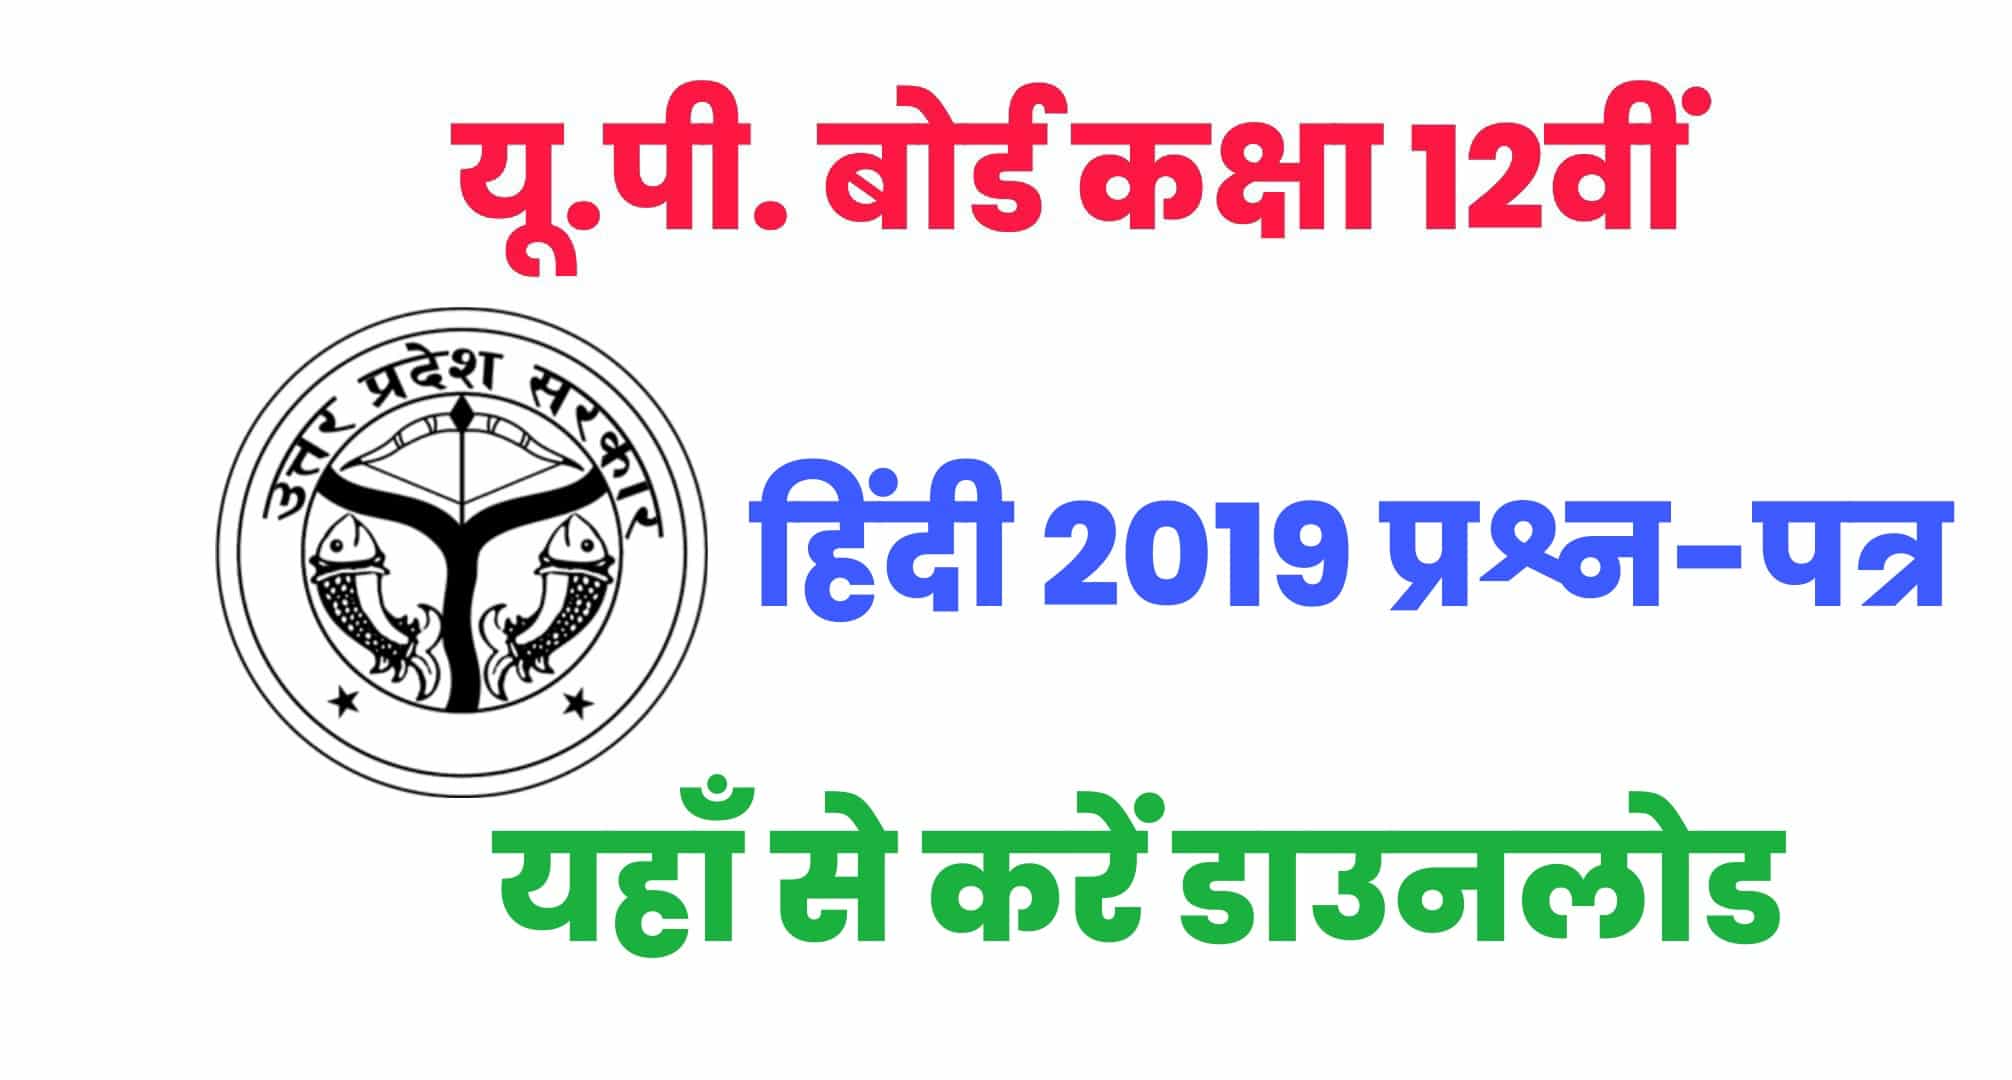 UP Board Class 12th Hindi Previous Year Paper : यहाँ से करें 12वीं हिंदी के पिछले साल के पेपर को डाउनलोड